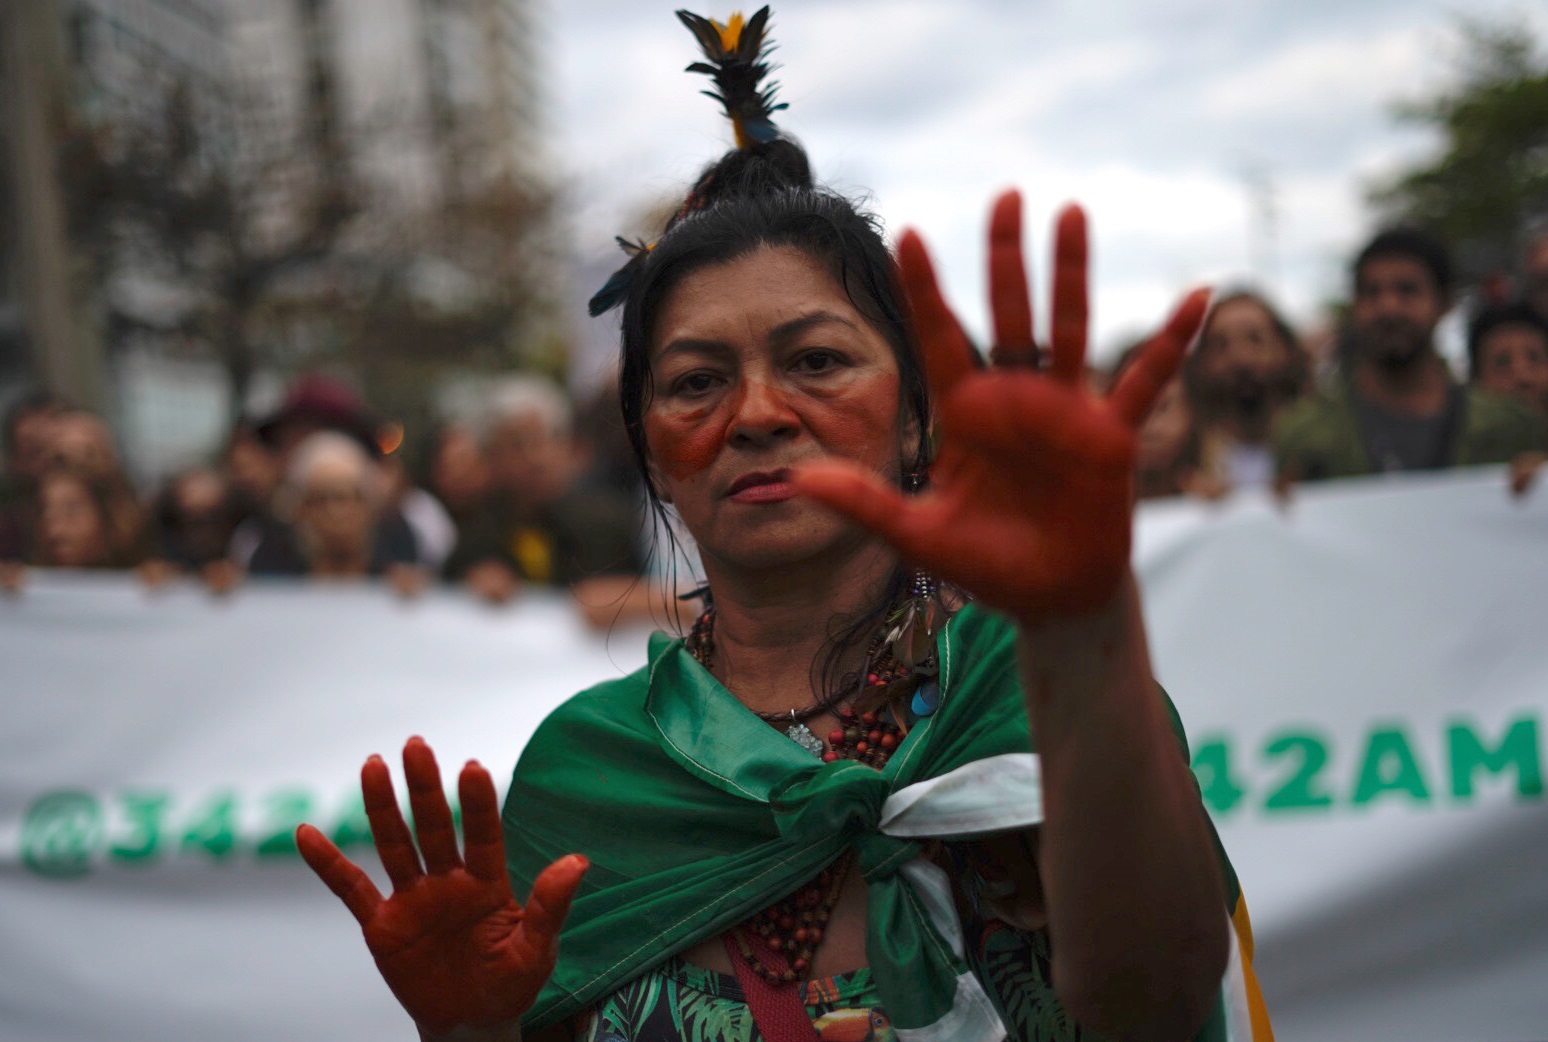 Indígena protesta no Rio de Janeiro contra a perseguição na Amazônia. Foto Mauro Pimentel/AFP